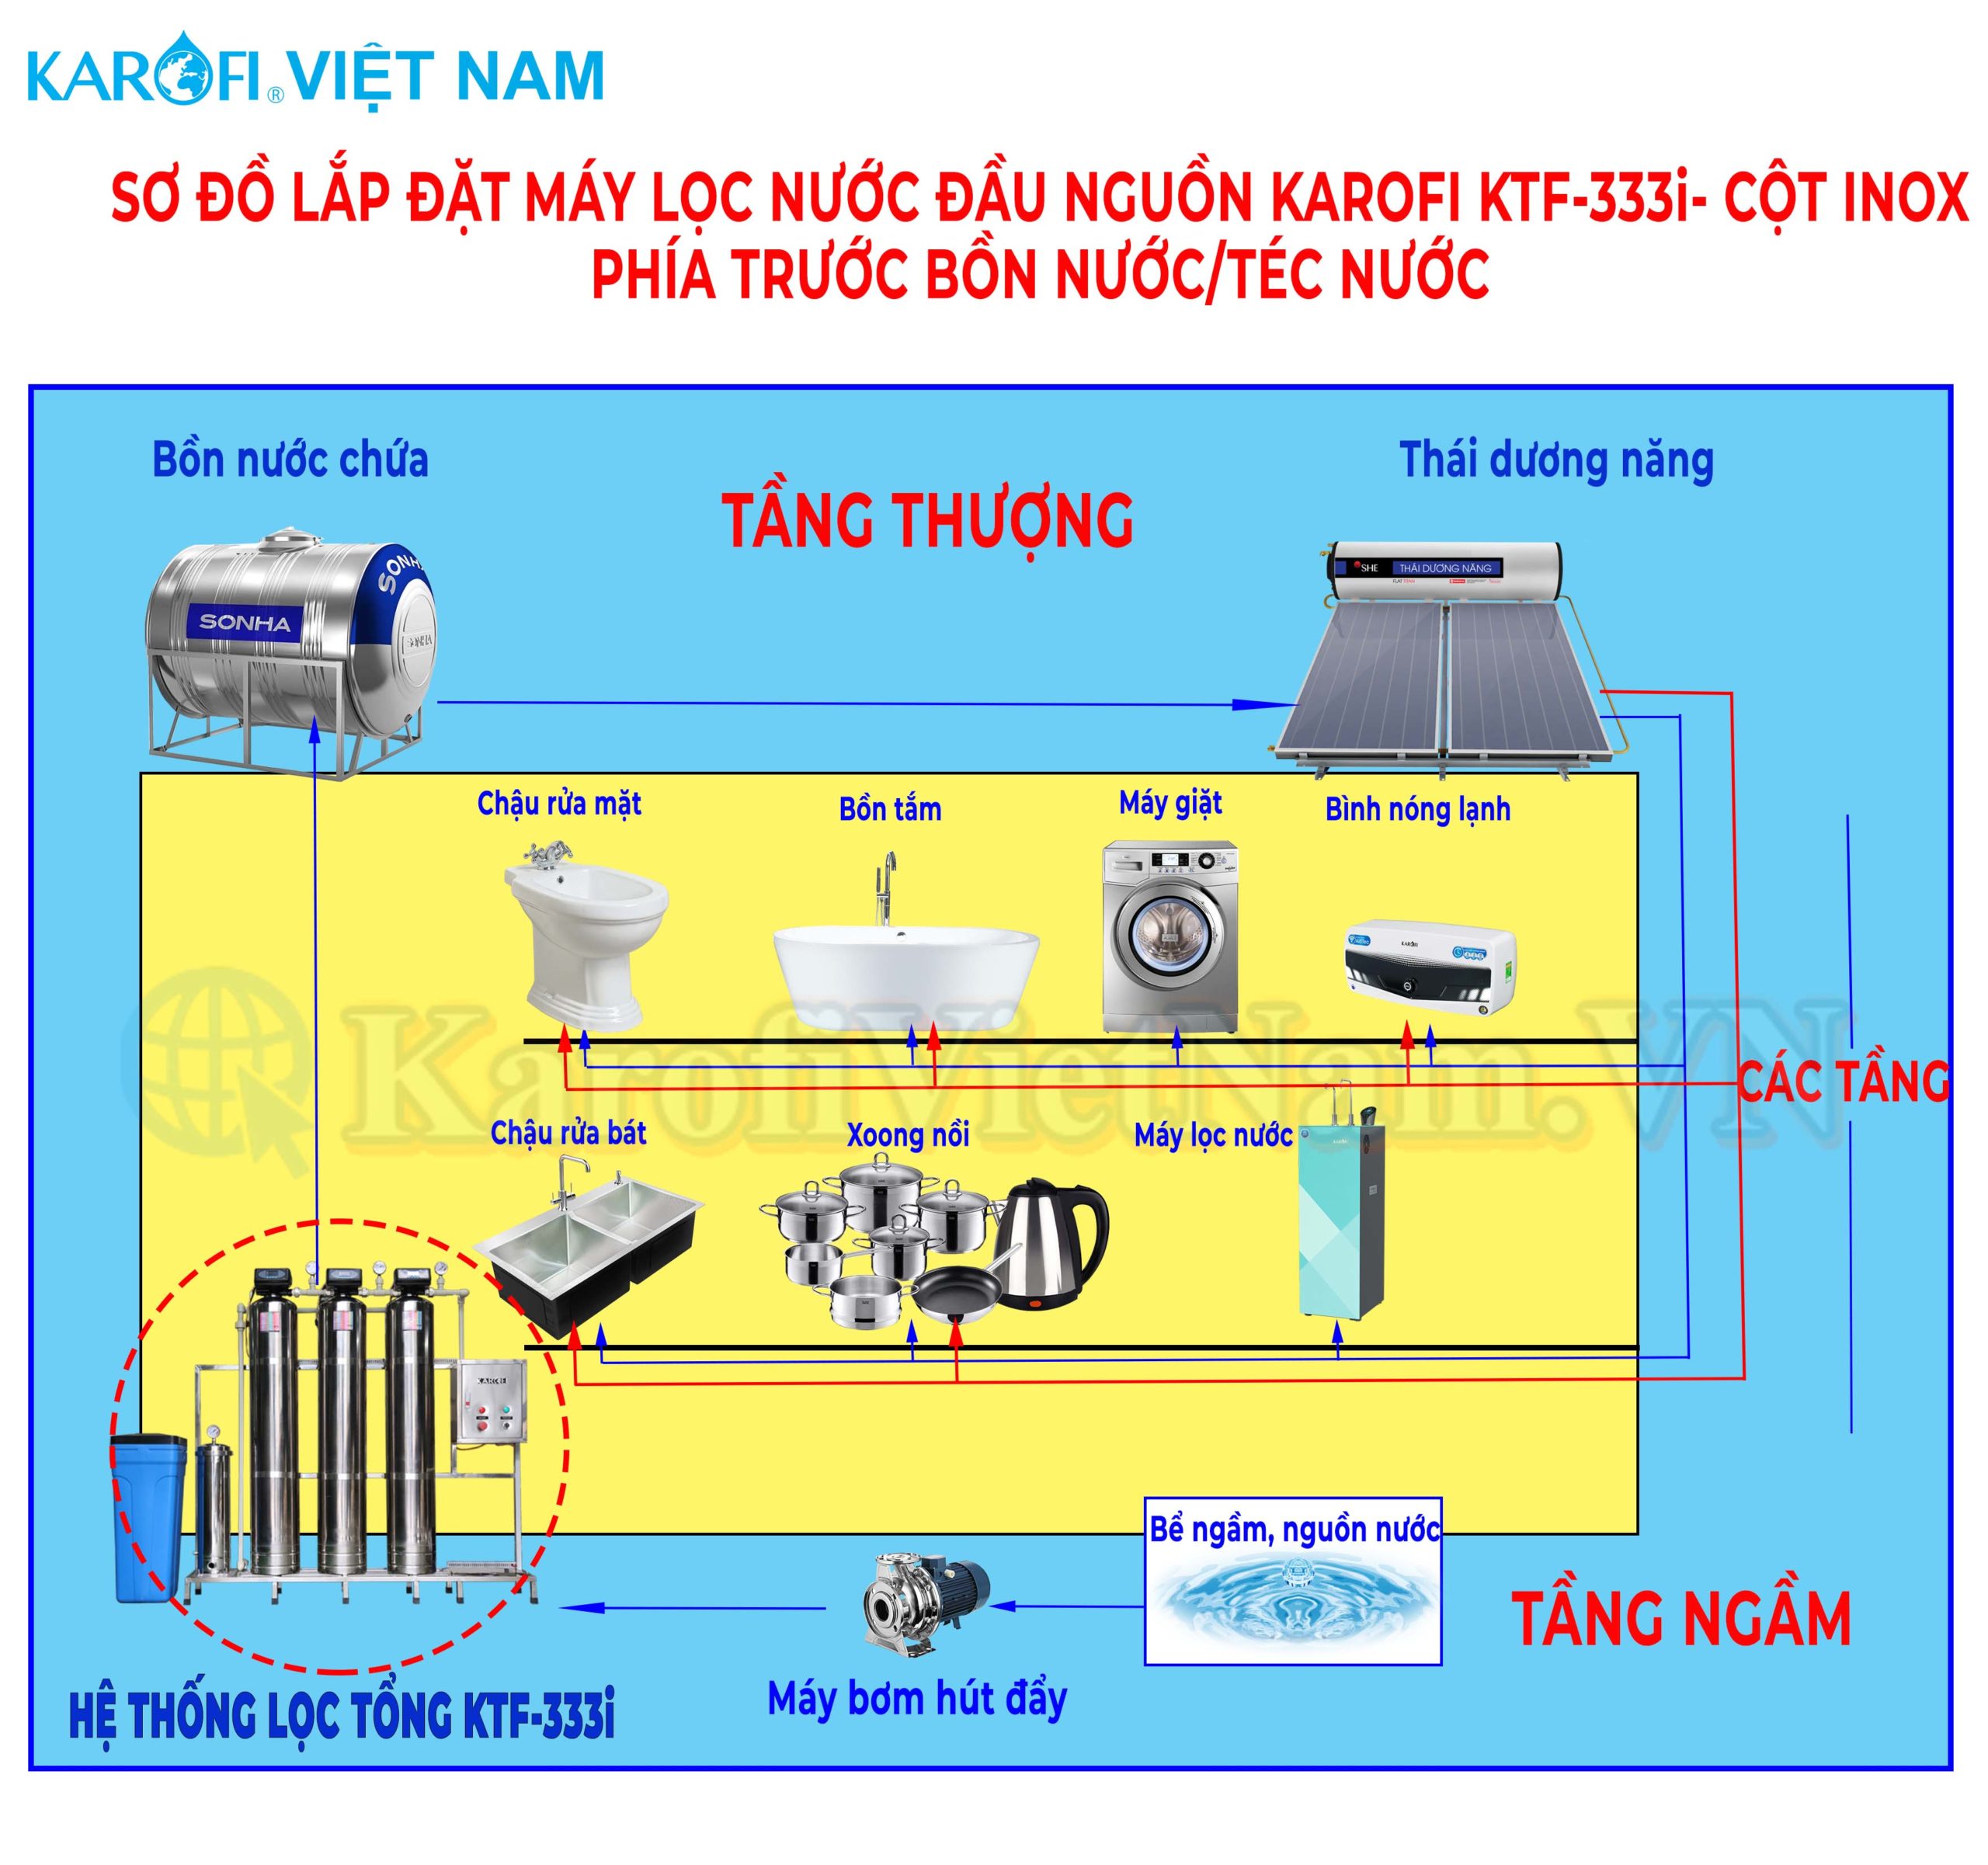 Sơ đồ lắp đặt Máy lọc nước đầu nguồn Karofi KTF-333I - Cột INOX phía trước bồn nước